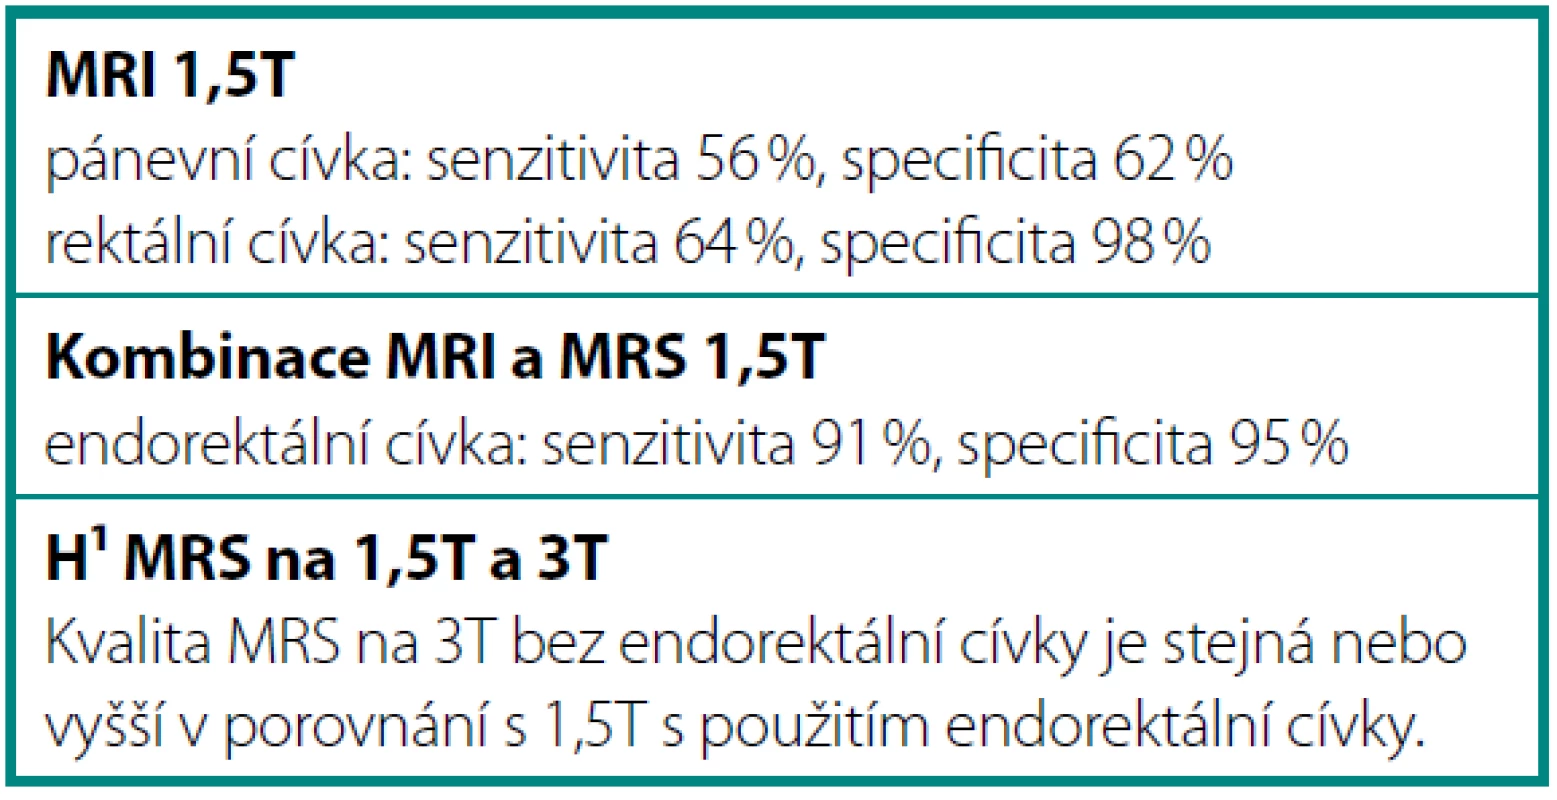 Senzitivita a specificita MRI + MRS
Table 1. Sensitivity and specificity of MRS and MRI